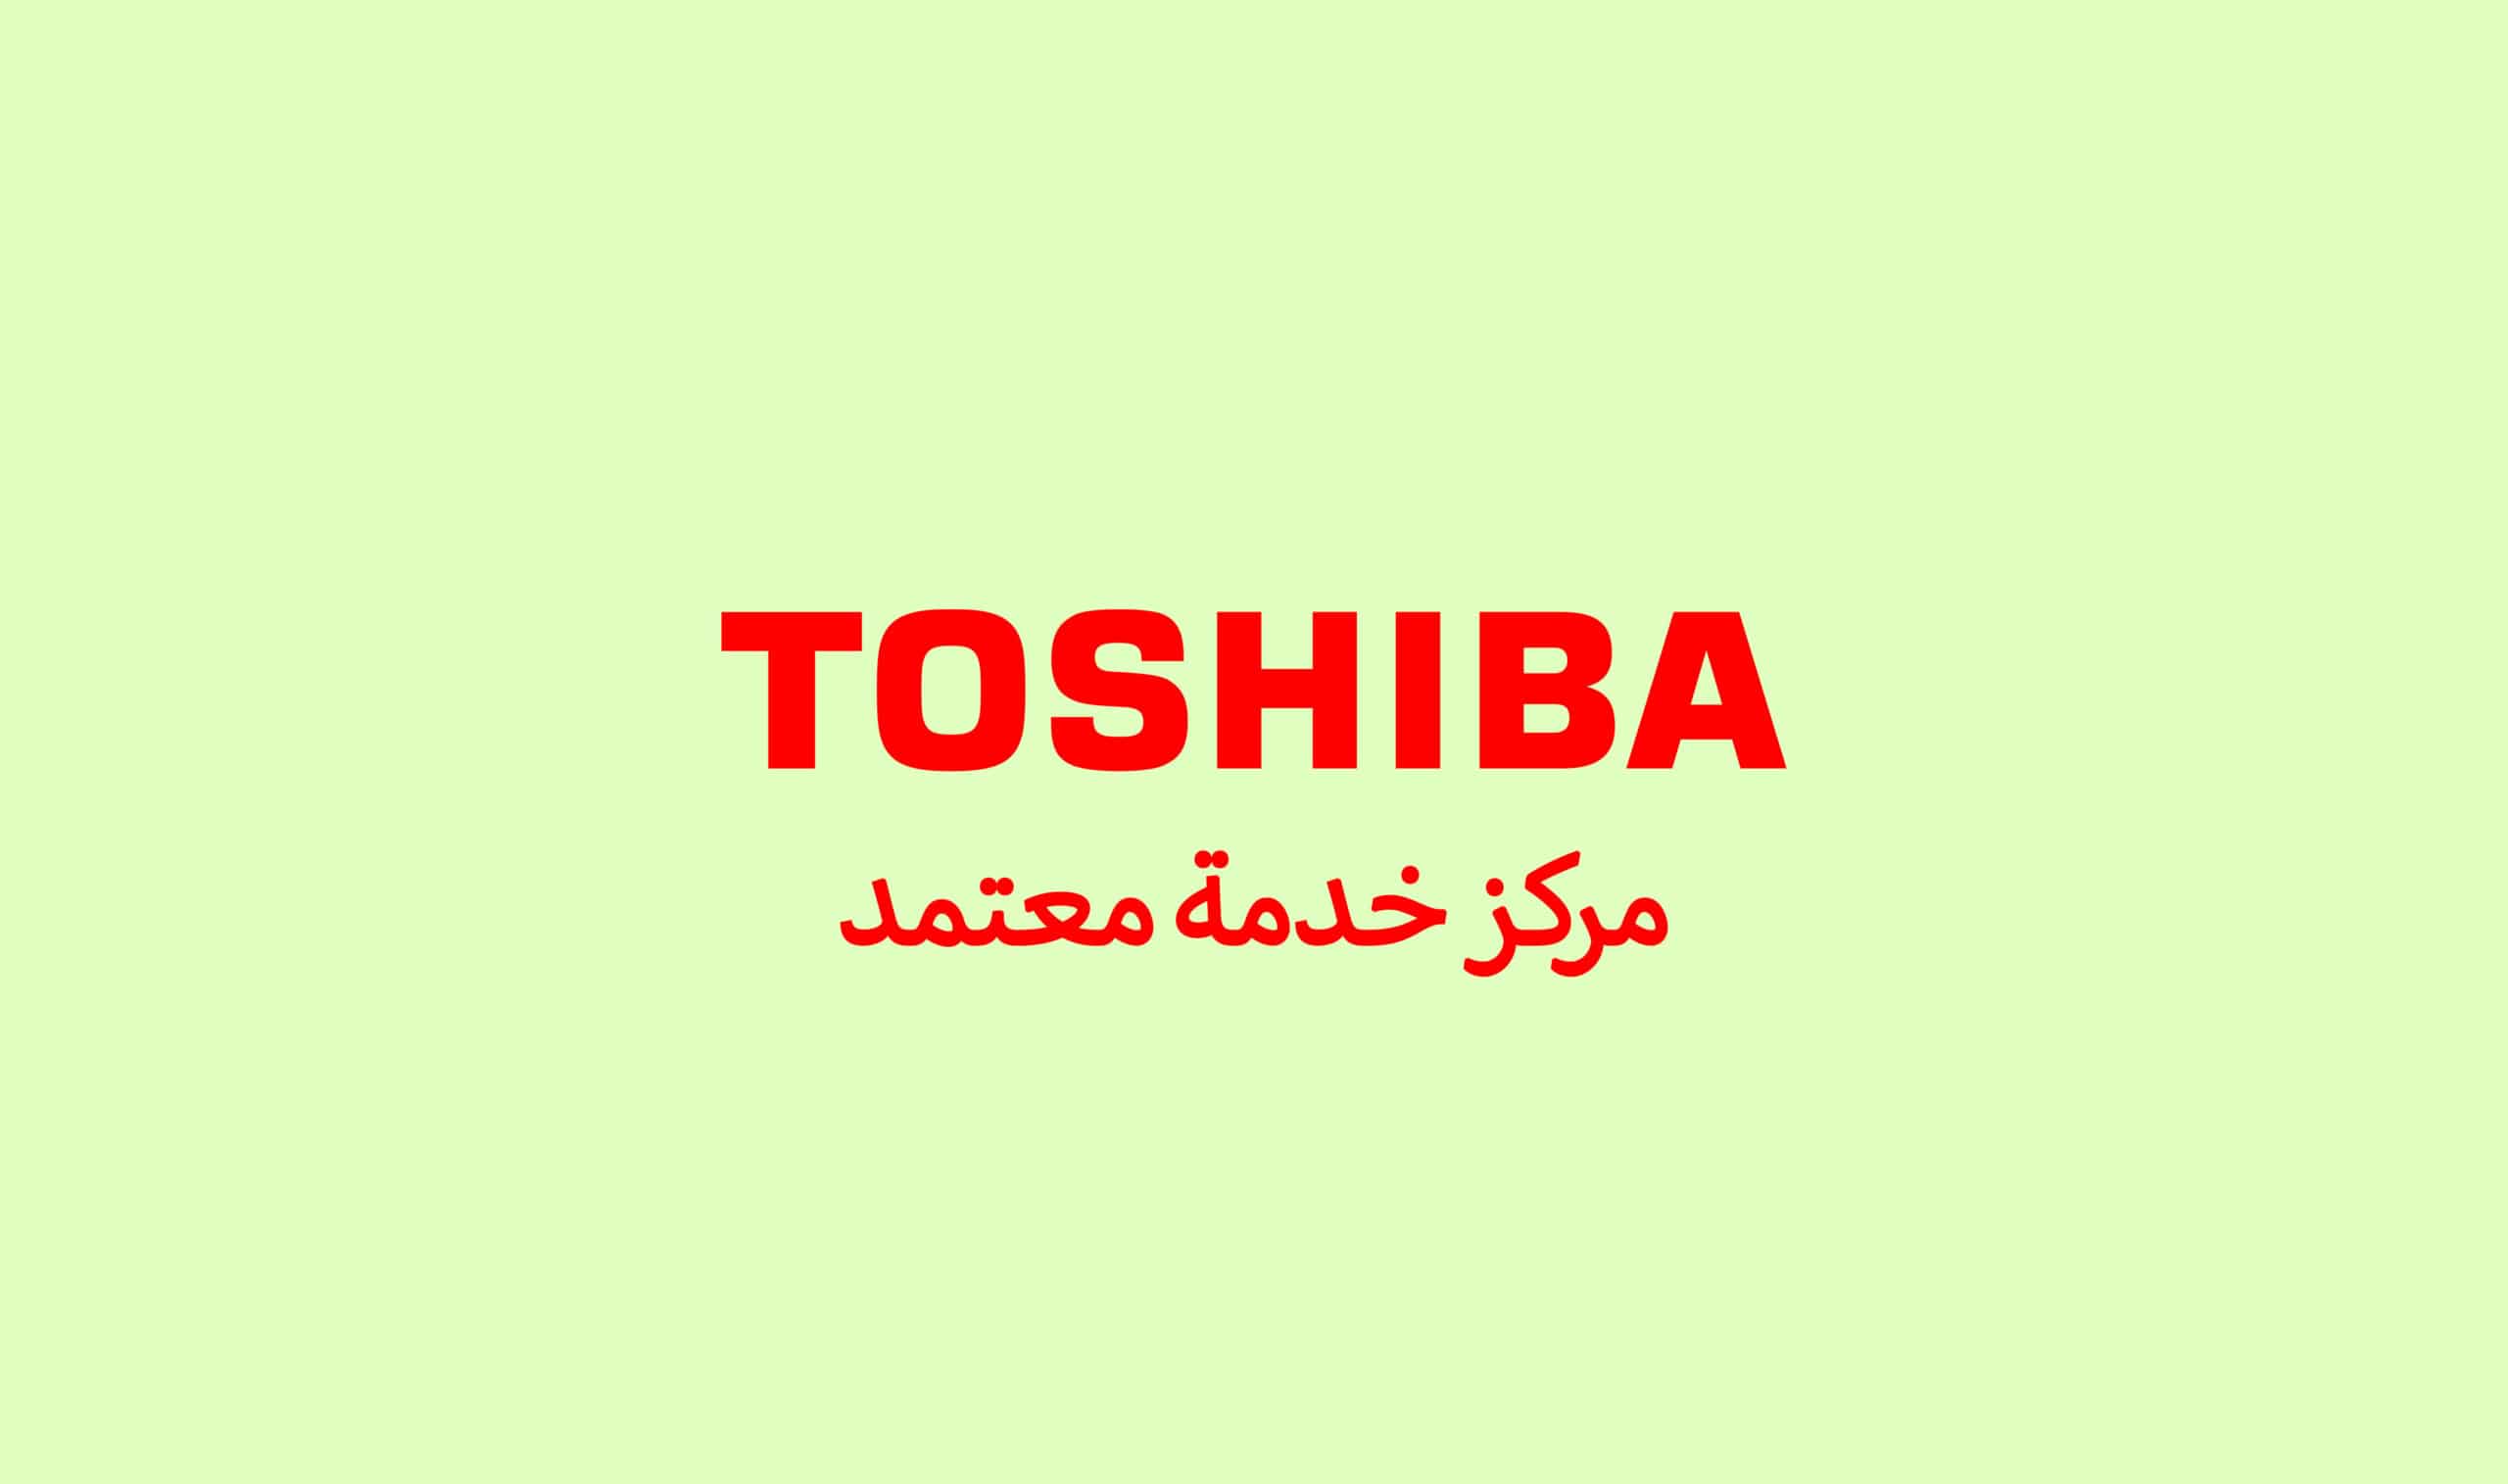 رقم شركة توشيبا الاسكندرية 01017556655